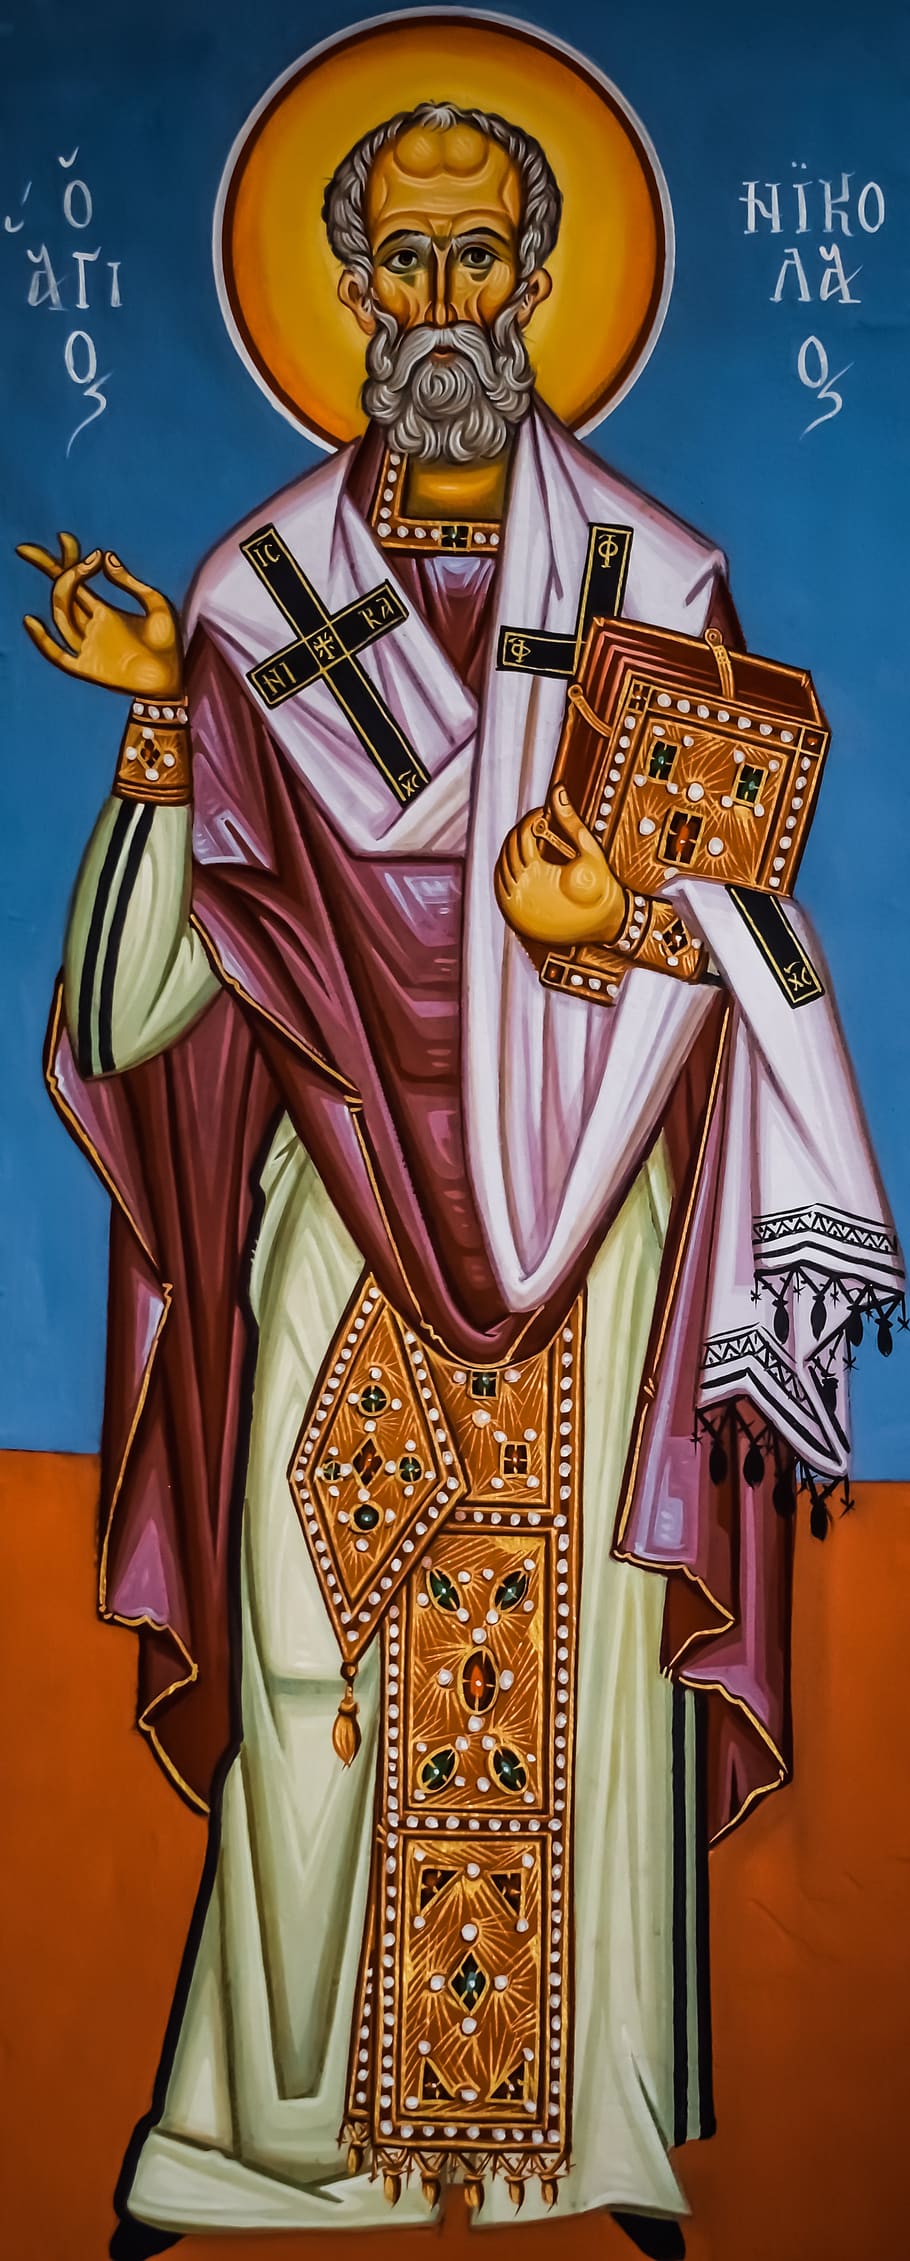 saint nickolas, ayios nikolaos, religion, painting, iconography